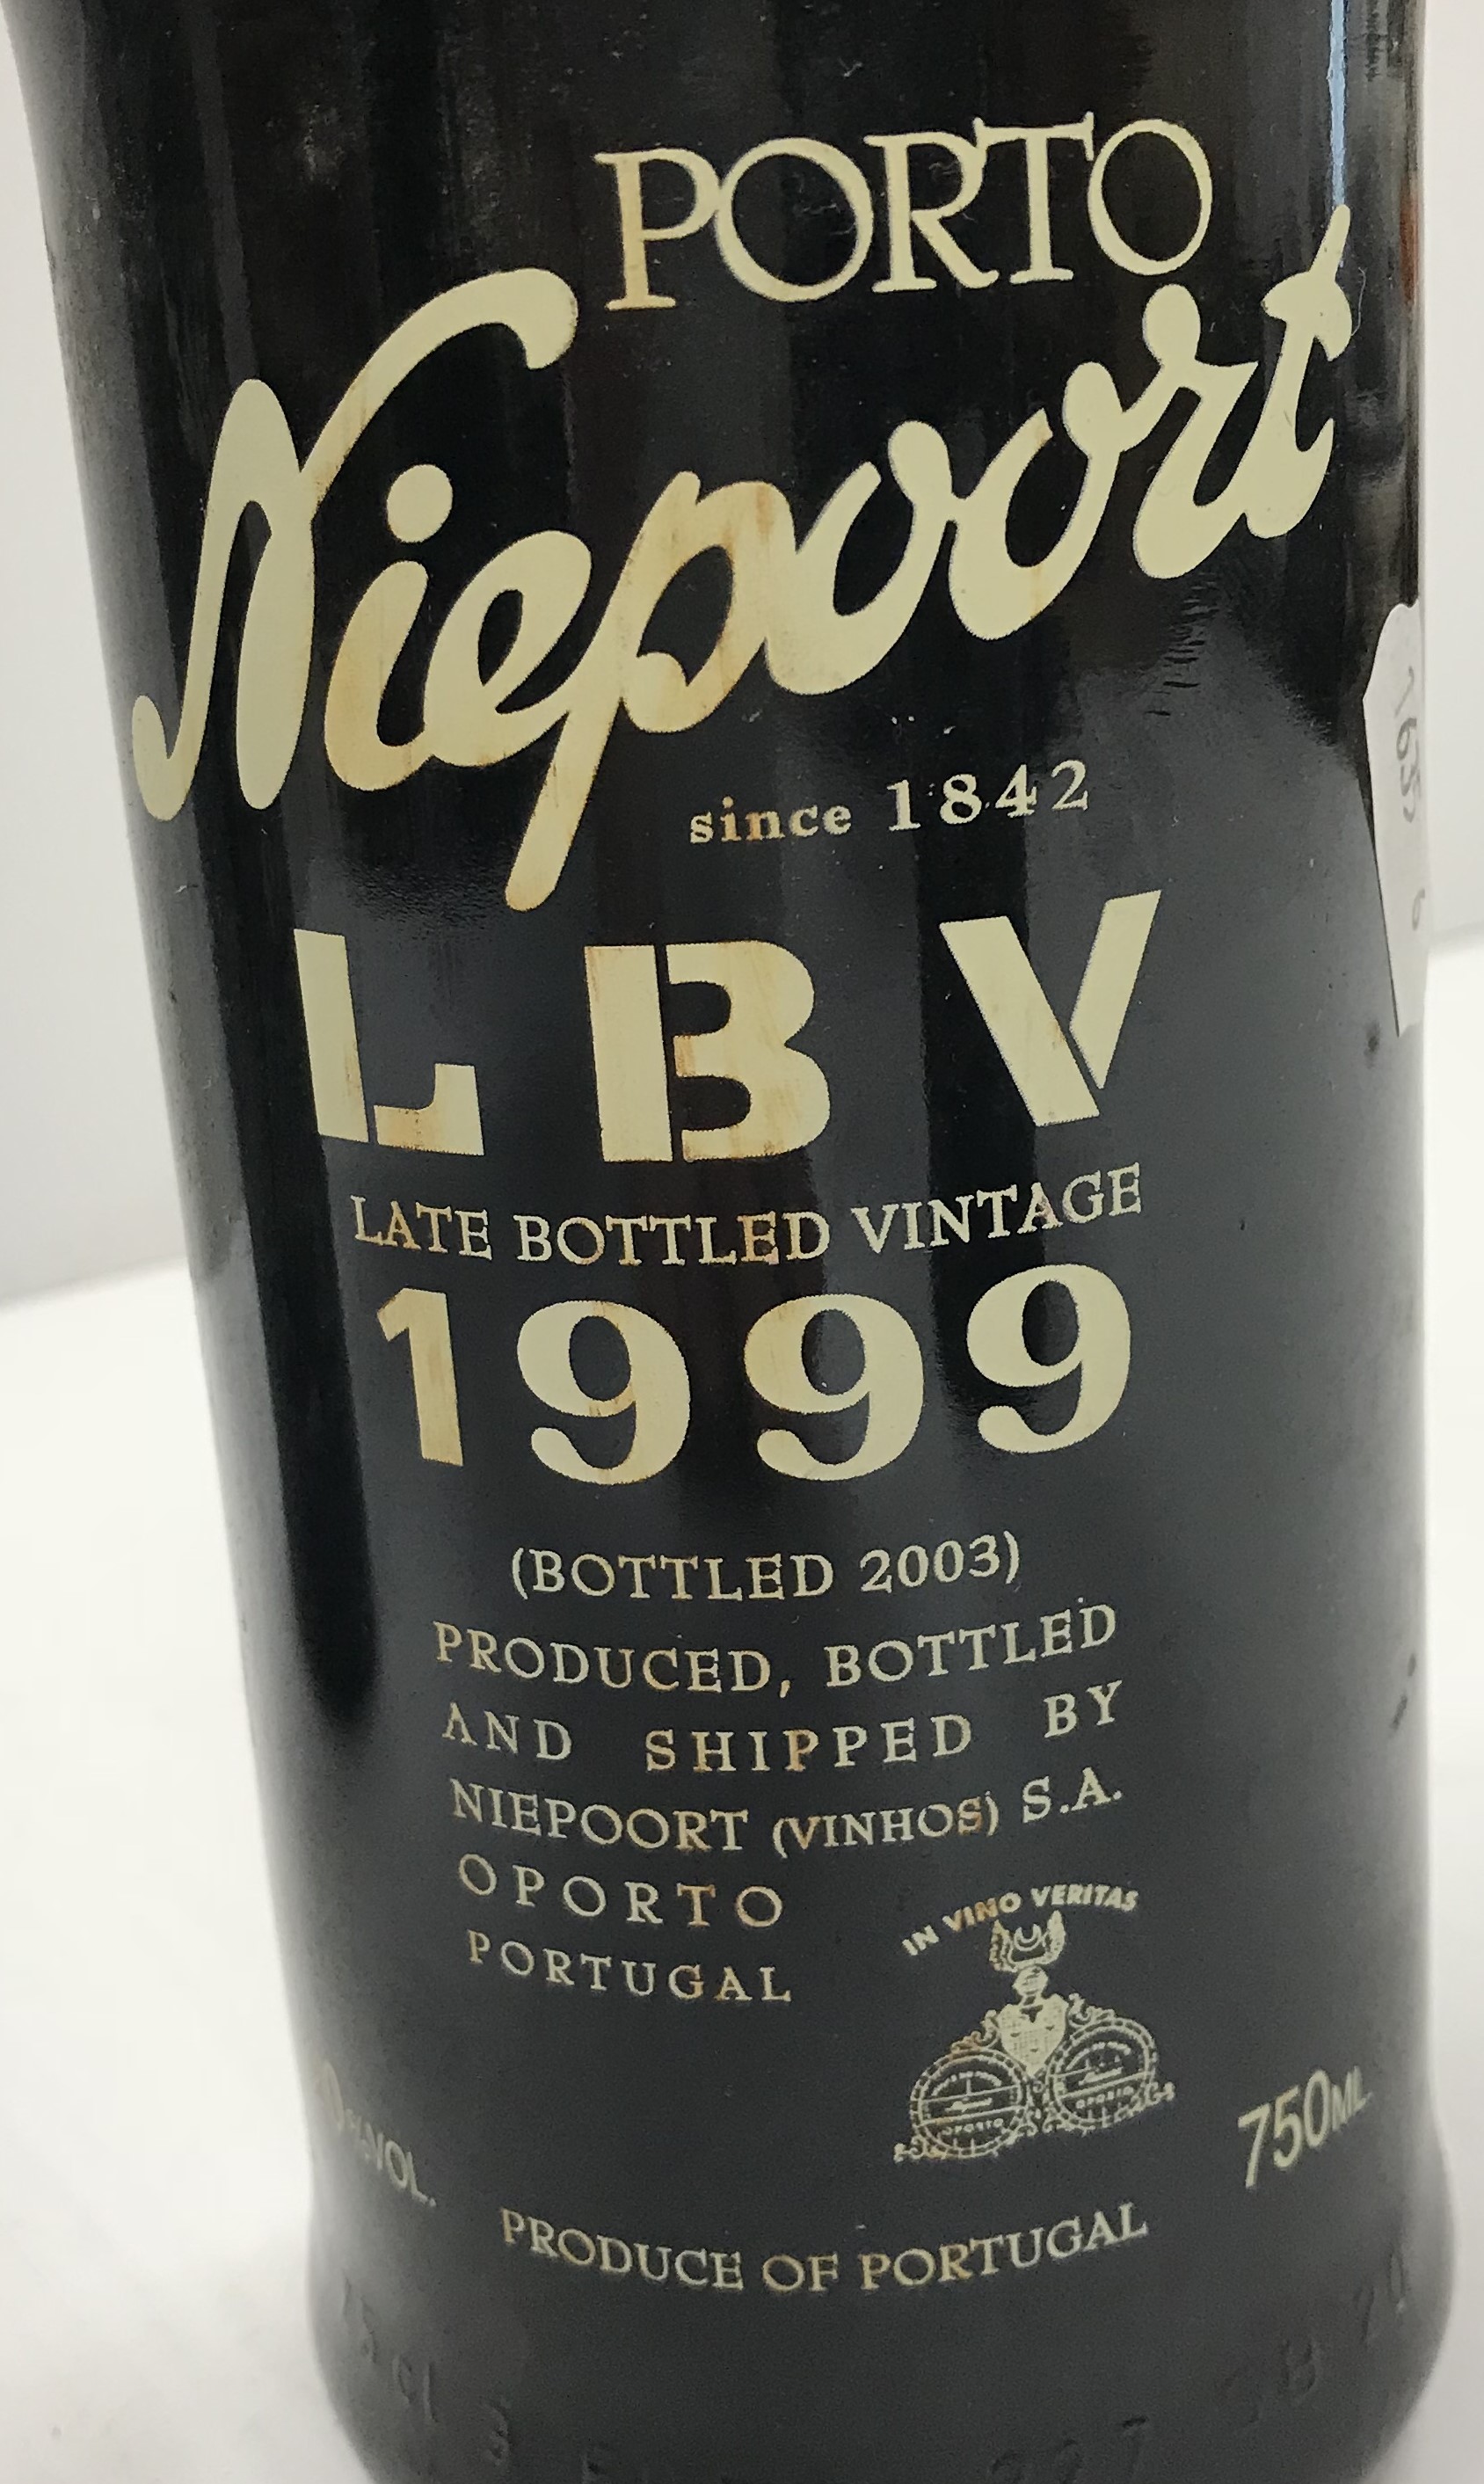 One bottle Almeida tawny port 1967 and two bottles Niepoort late bottled vintage port 1999, - Image 4 of 4